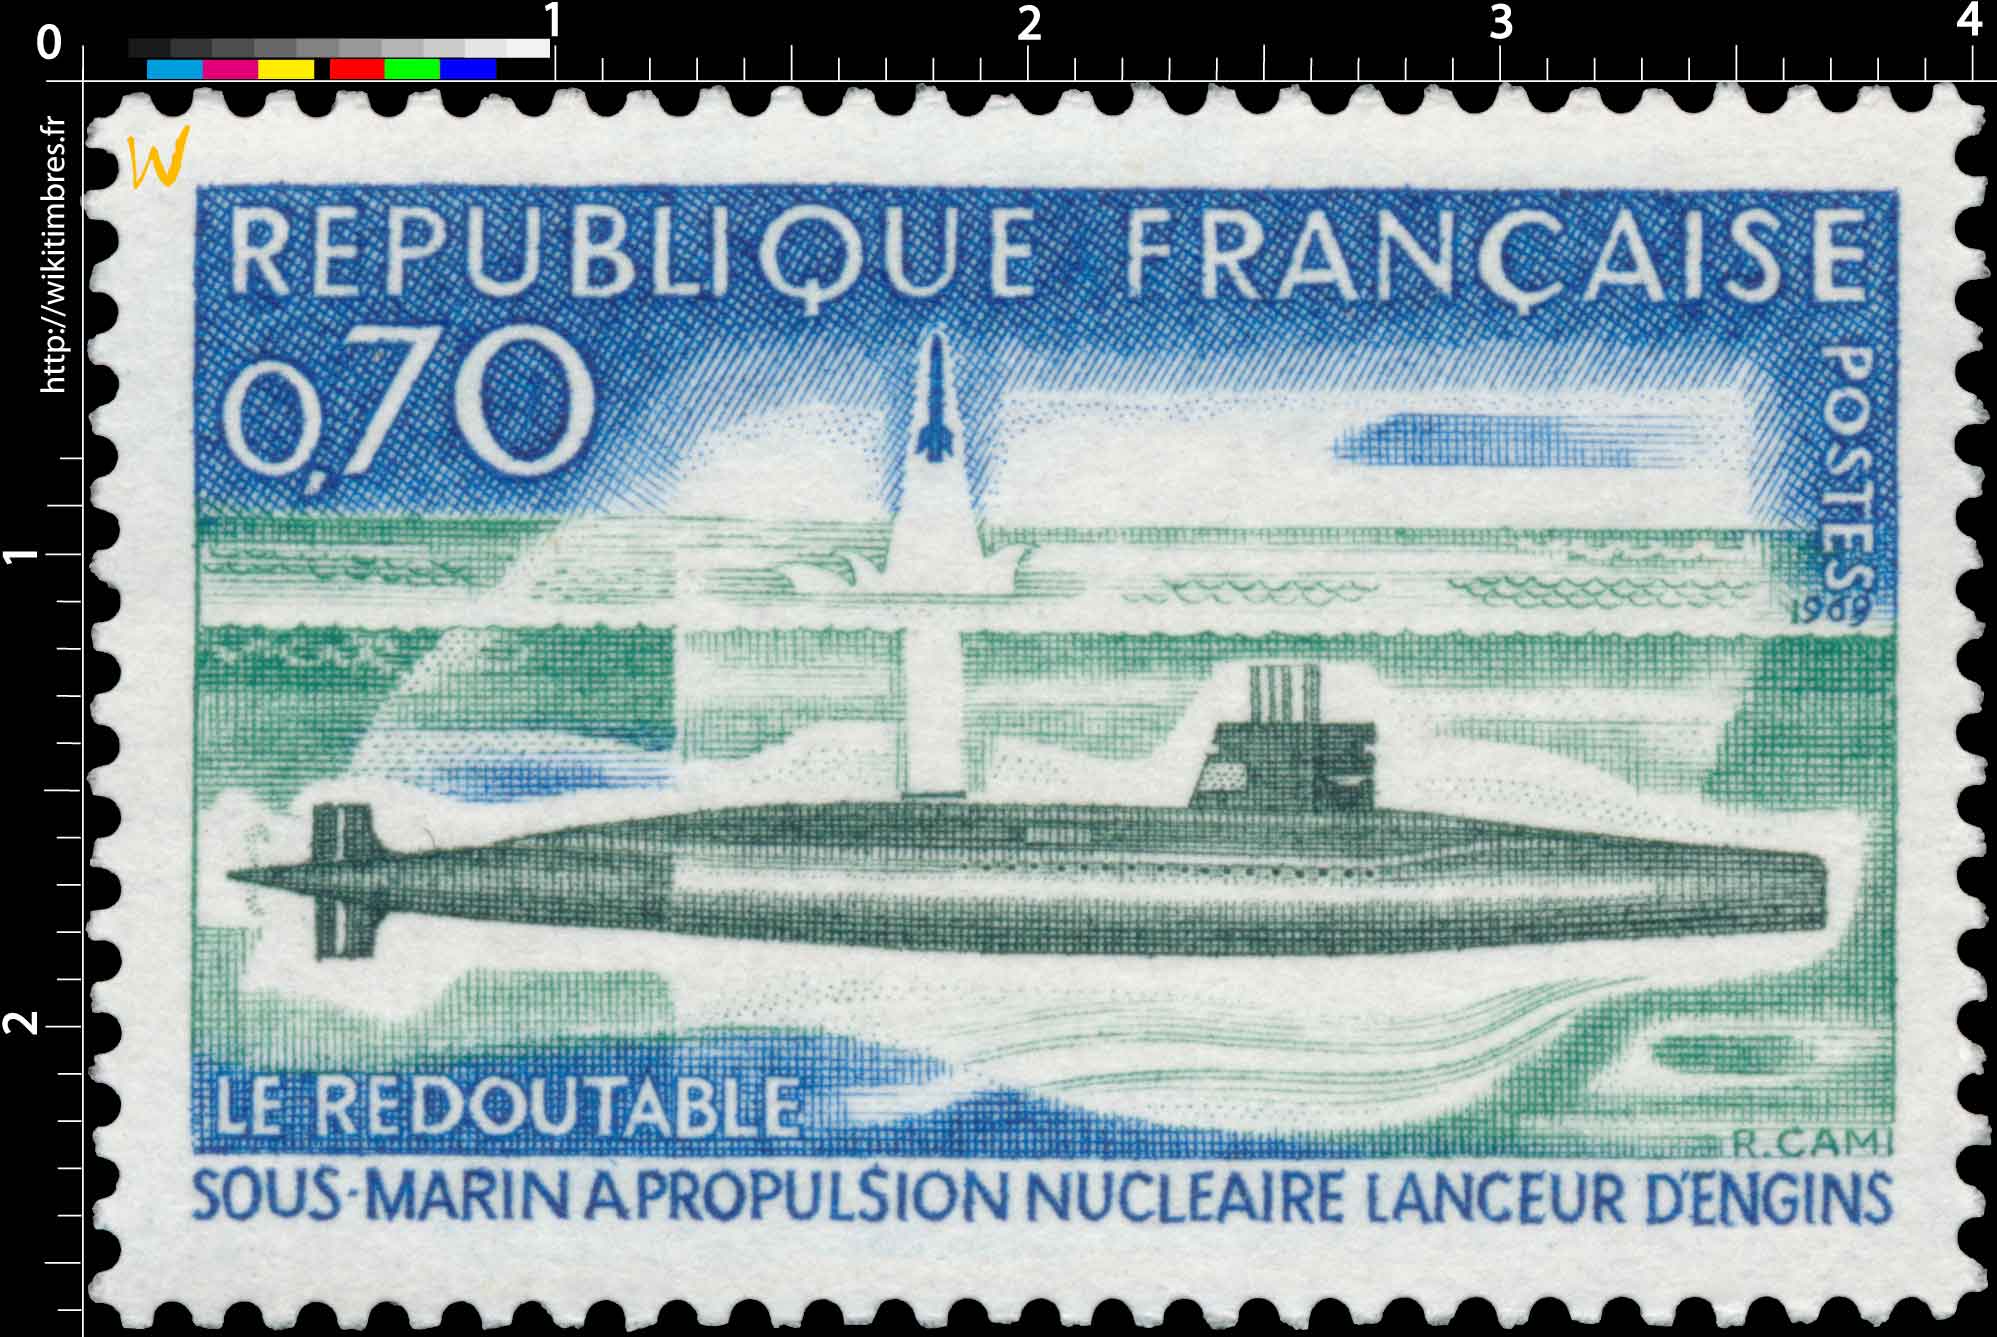 1969 LE REDOUTABLE SOUS-MARIN A PROPULSION NUCLÉAIRE LANCEUR D'ENGINS